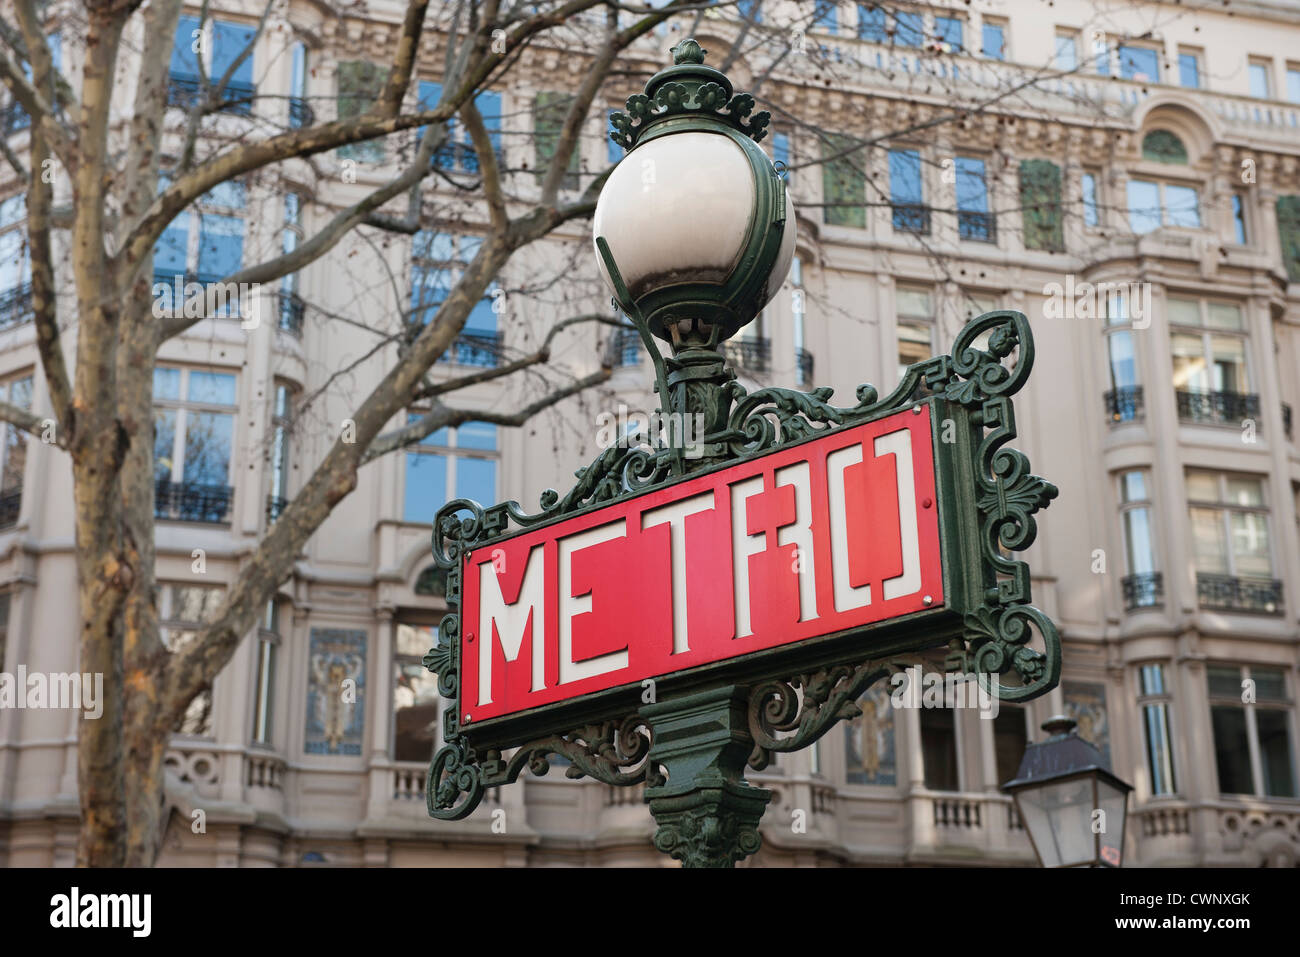 France, Paris, Paris Métro signe sur lamp post Banque D'Images